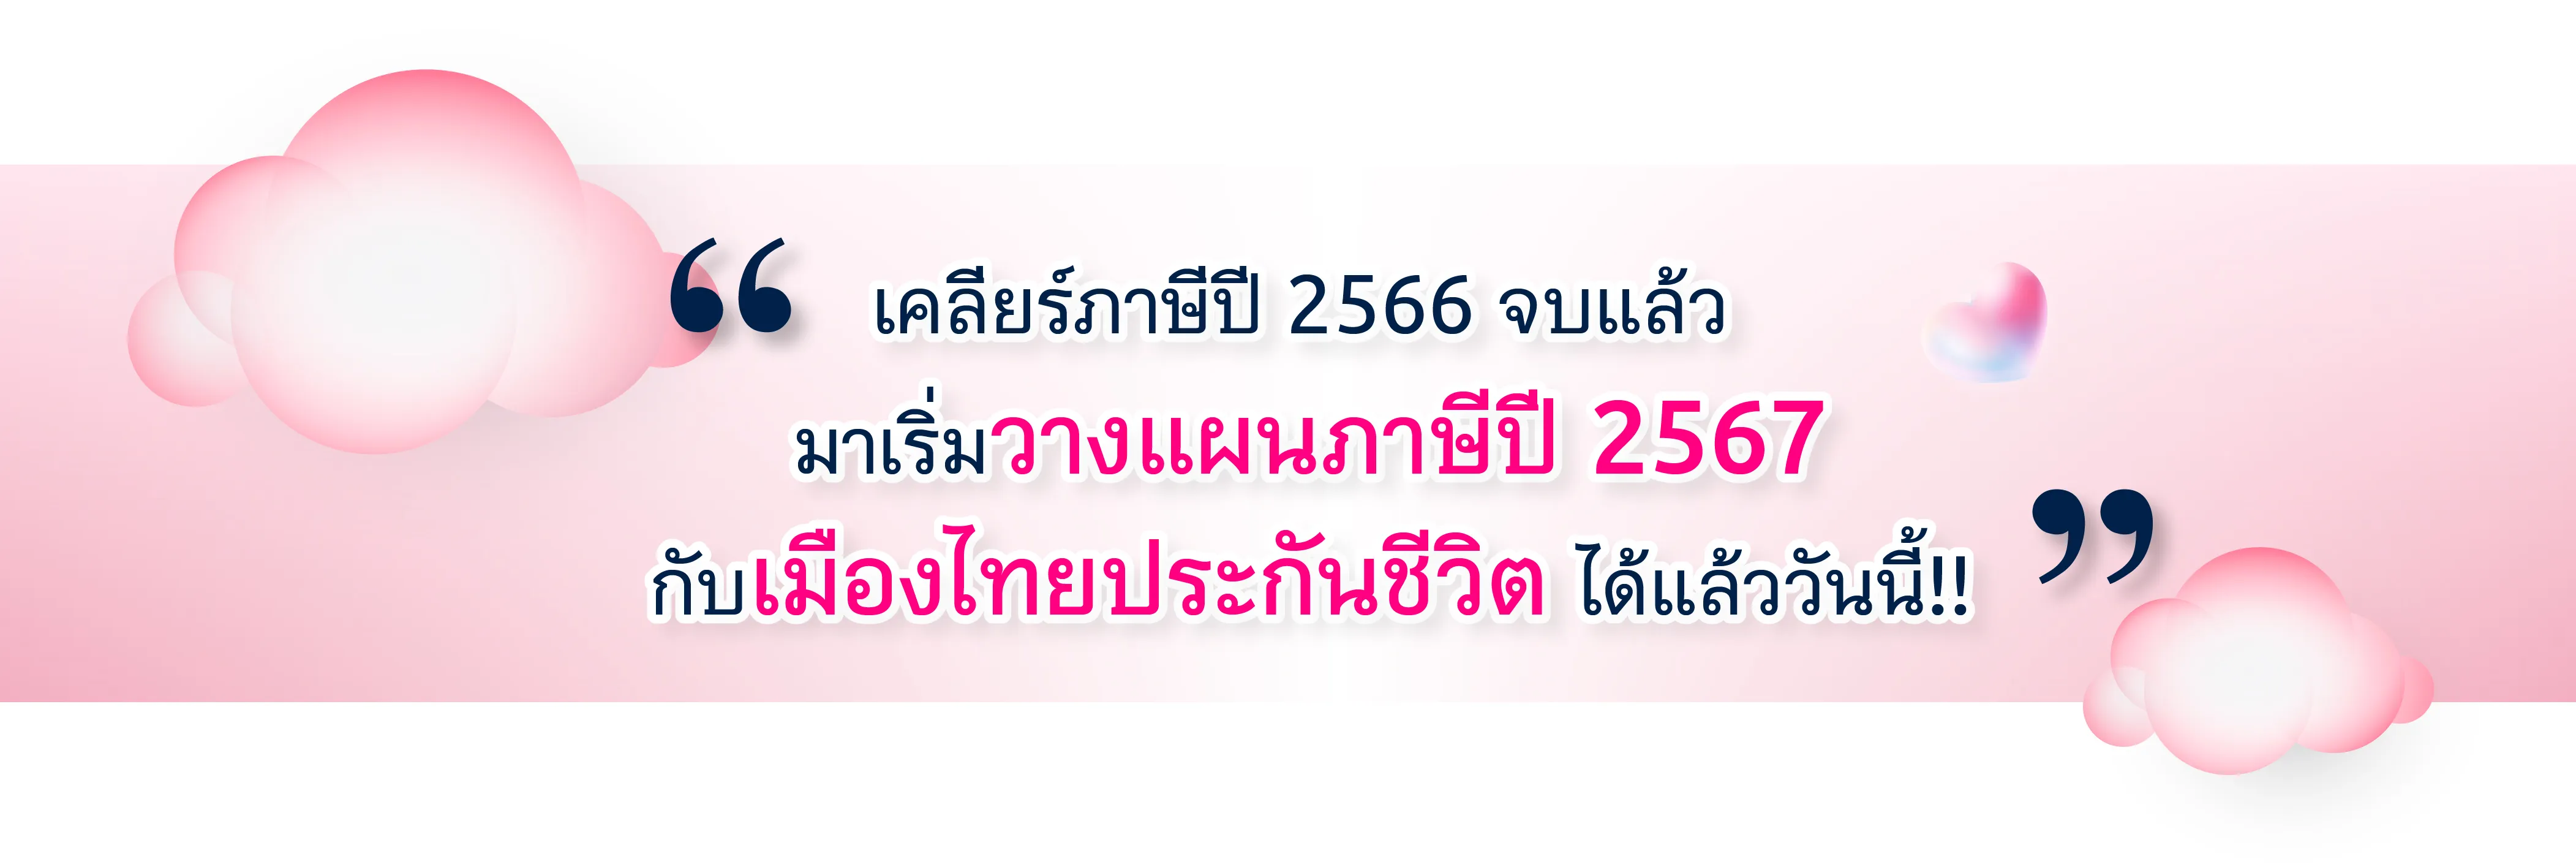 เคลียร์ภาษีปี 2566 จบแล้ว มาเริ่มวางแผนภาษีปี 2567 กับเมืองไทยประกันชีวิต ได้แล้ววันนี้